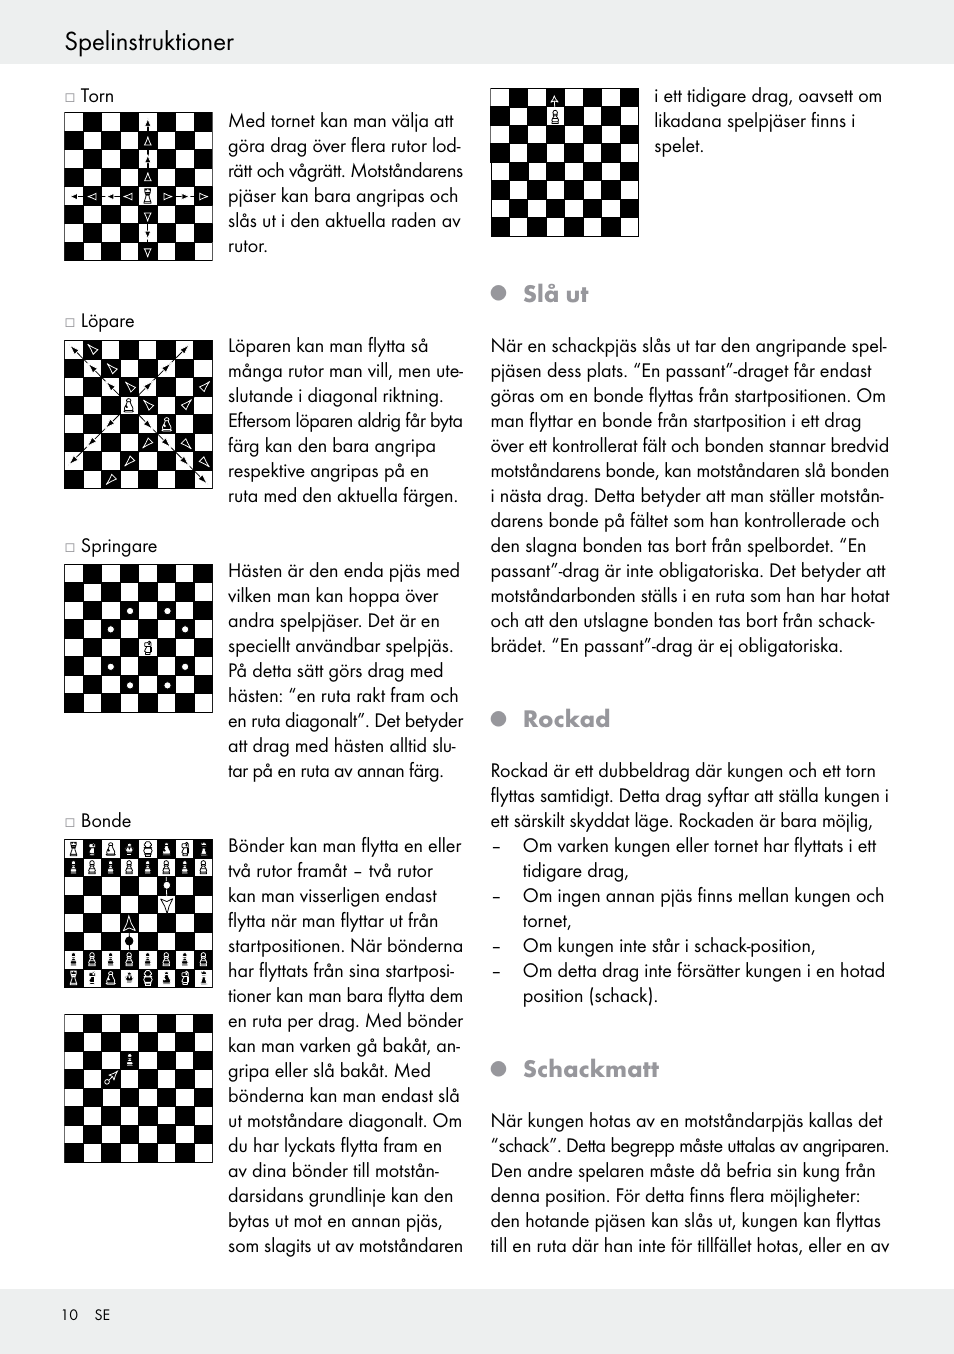 Spelinstruktioner, Slå ut, Rockad | Playtive Chess Set User Manual | Page  10 / 24